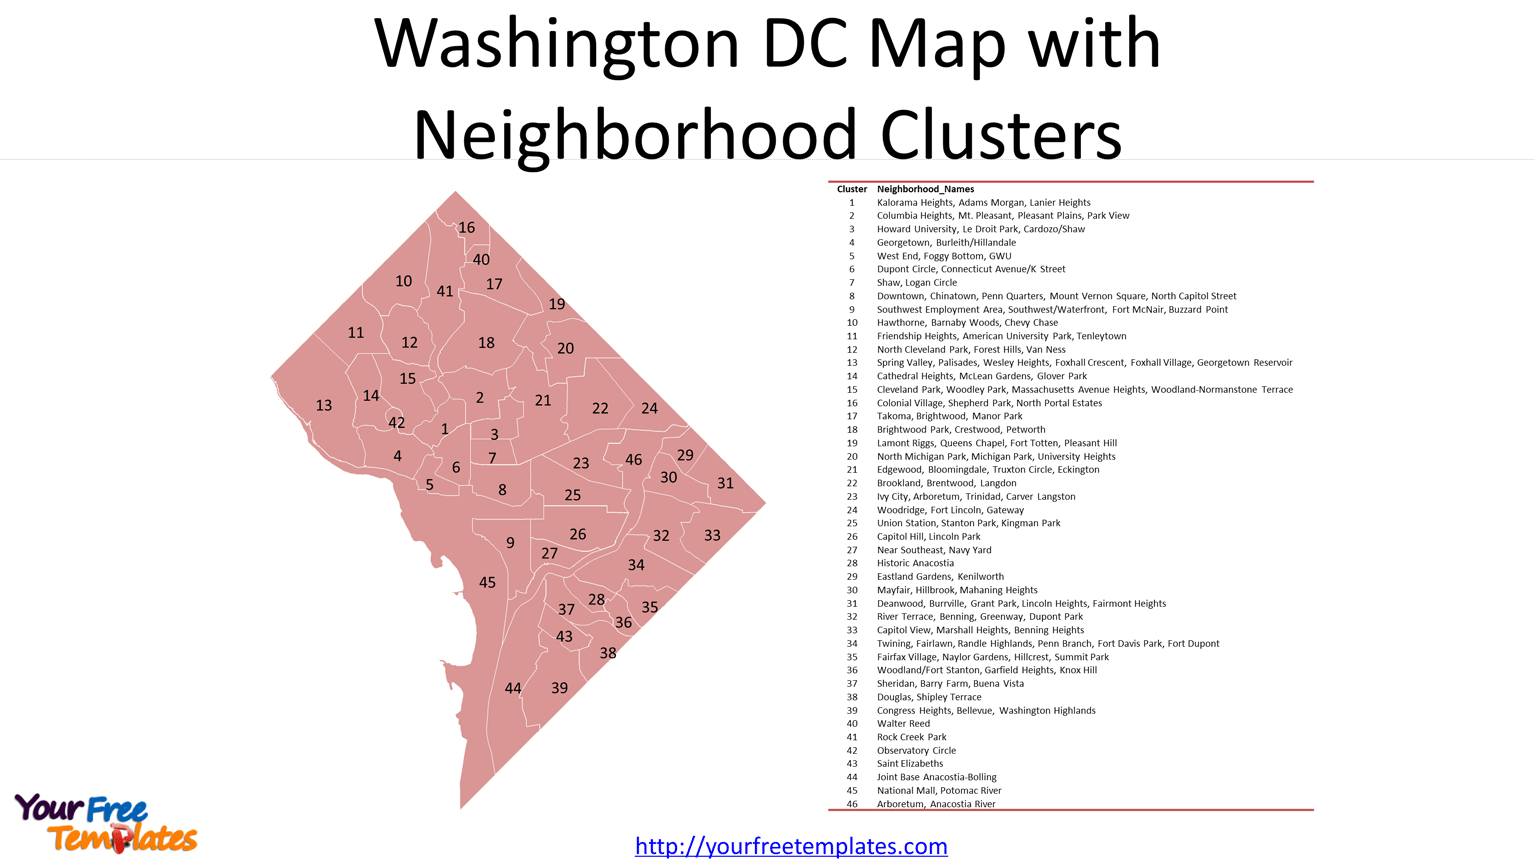 Washington DC Map with Neighborhood Clusters